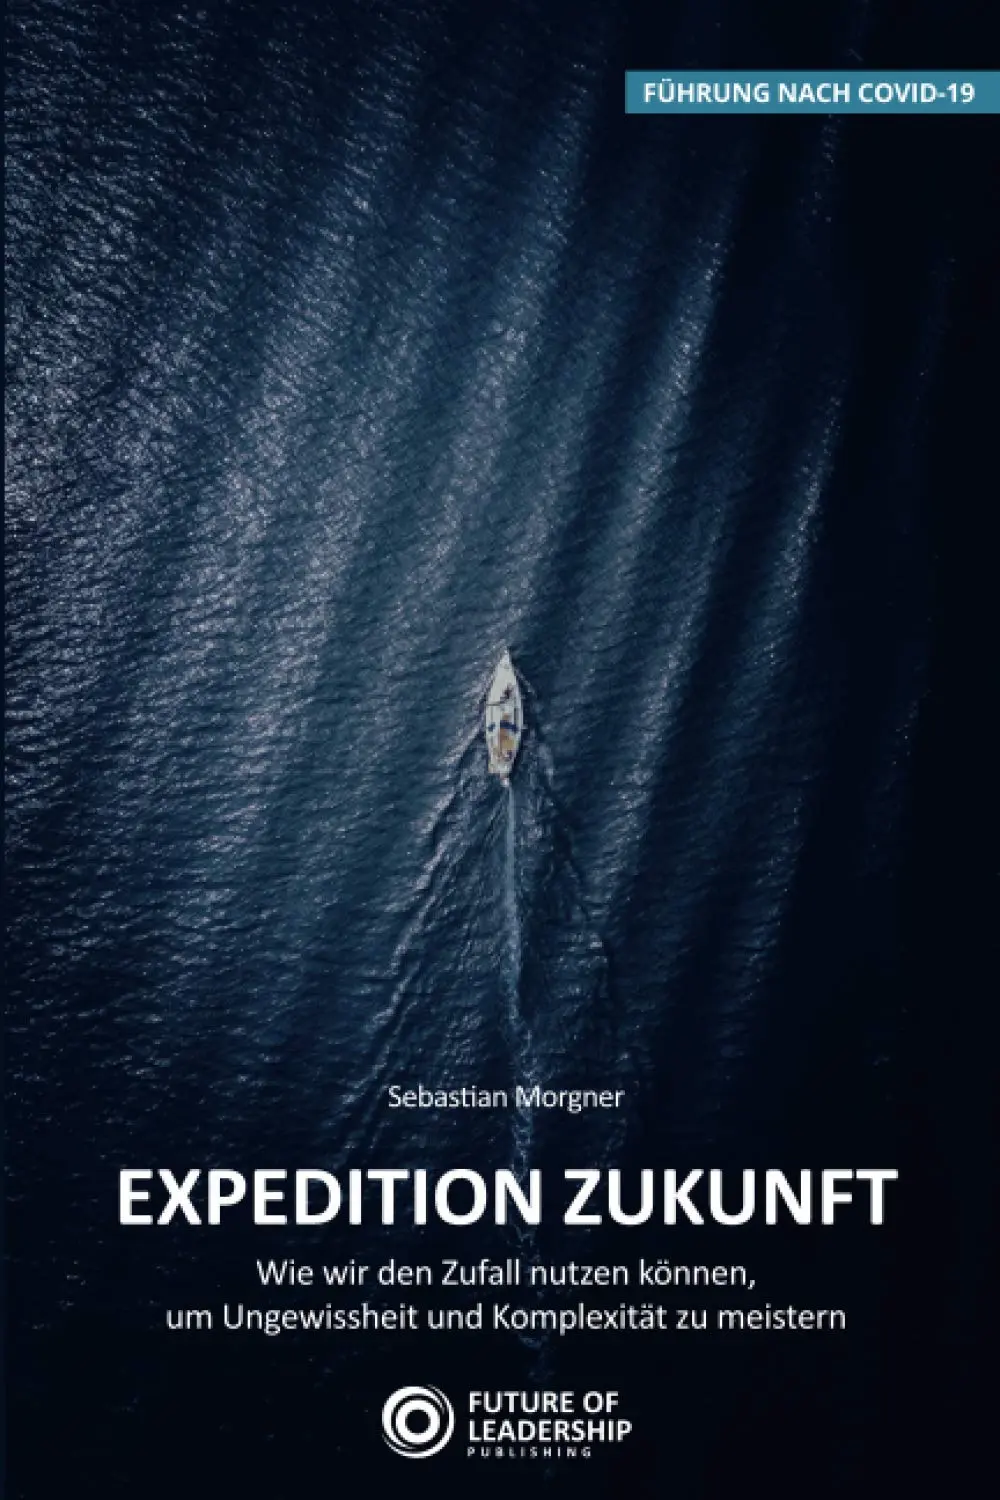 Expedition Zukunft, das Buch von Sebastian Morgner